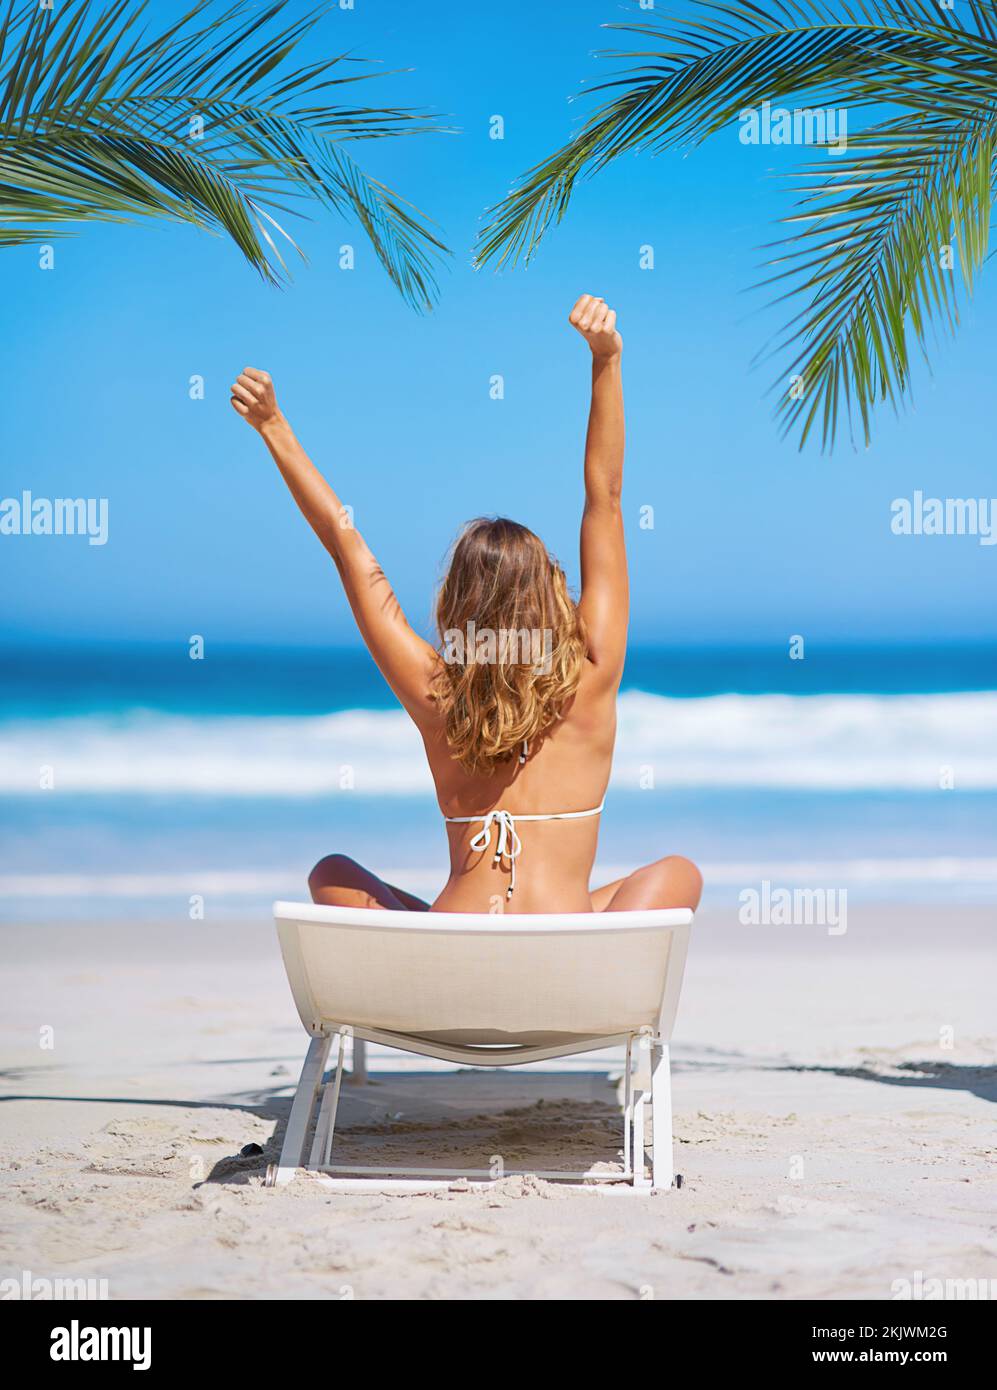 Strand, Entspannung und Blick auf die Frau auf einem Stuhl im Urlaub, Urlaub oder Sommer. Freiheit, Frieden oder junge Frau im Bikini, die sich an der Küste streckt Stockfoto